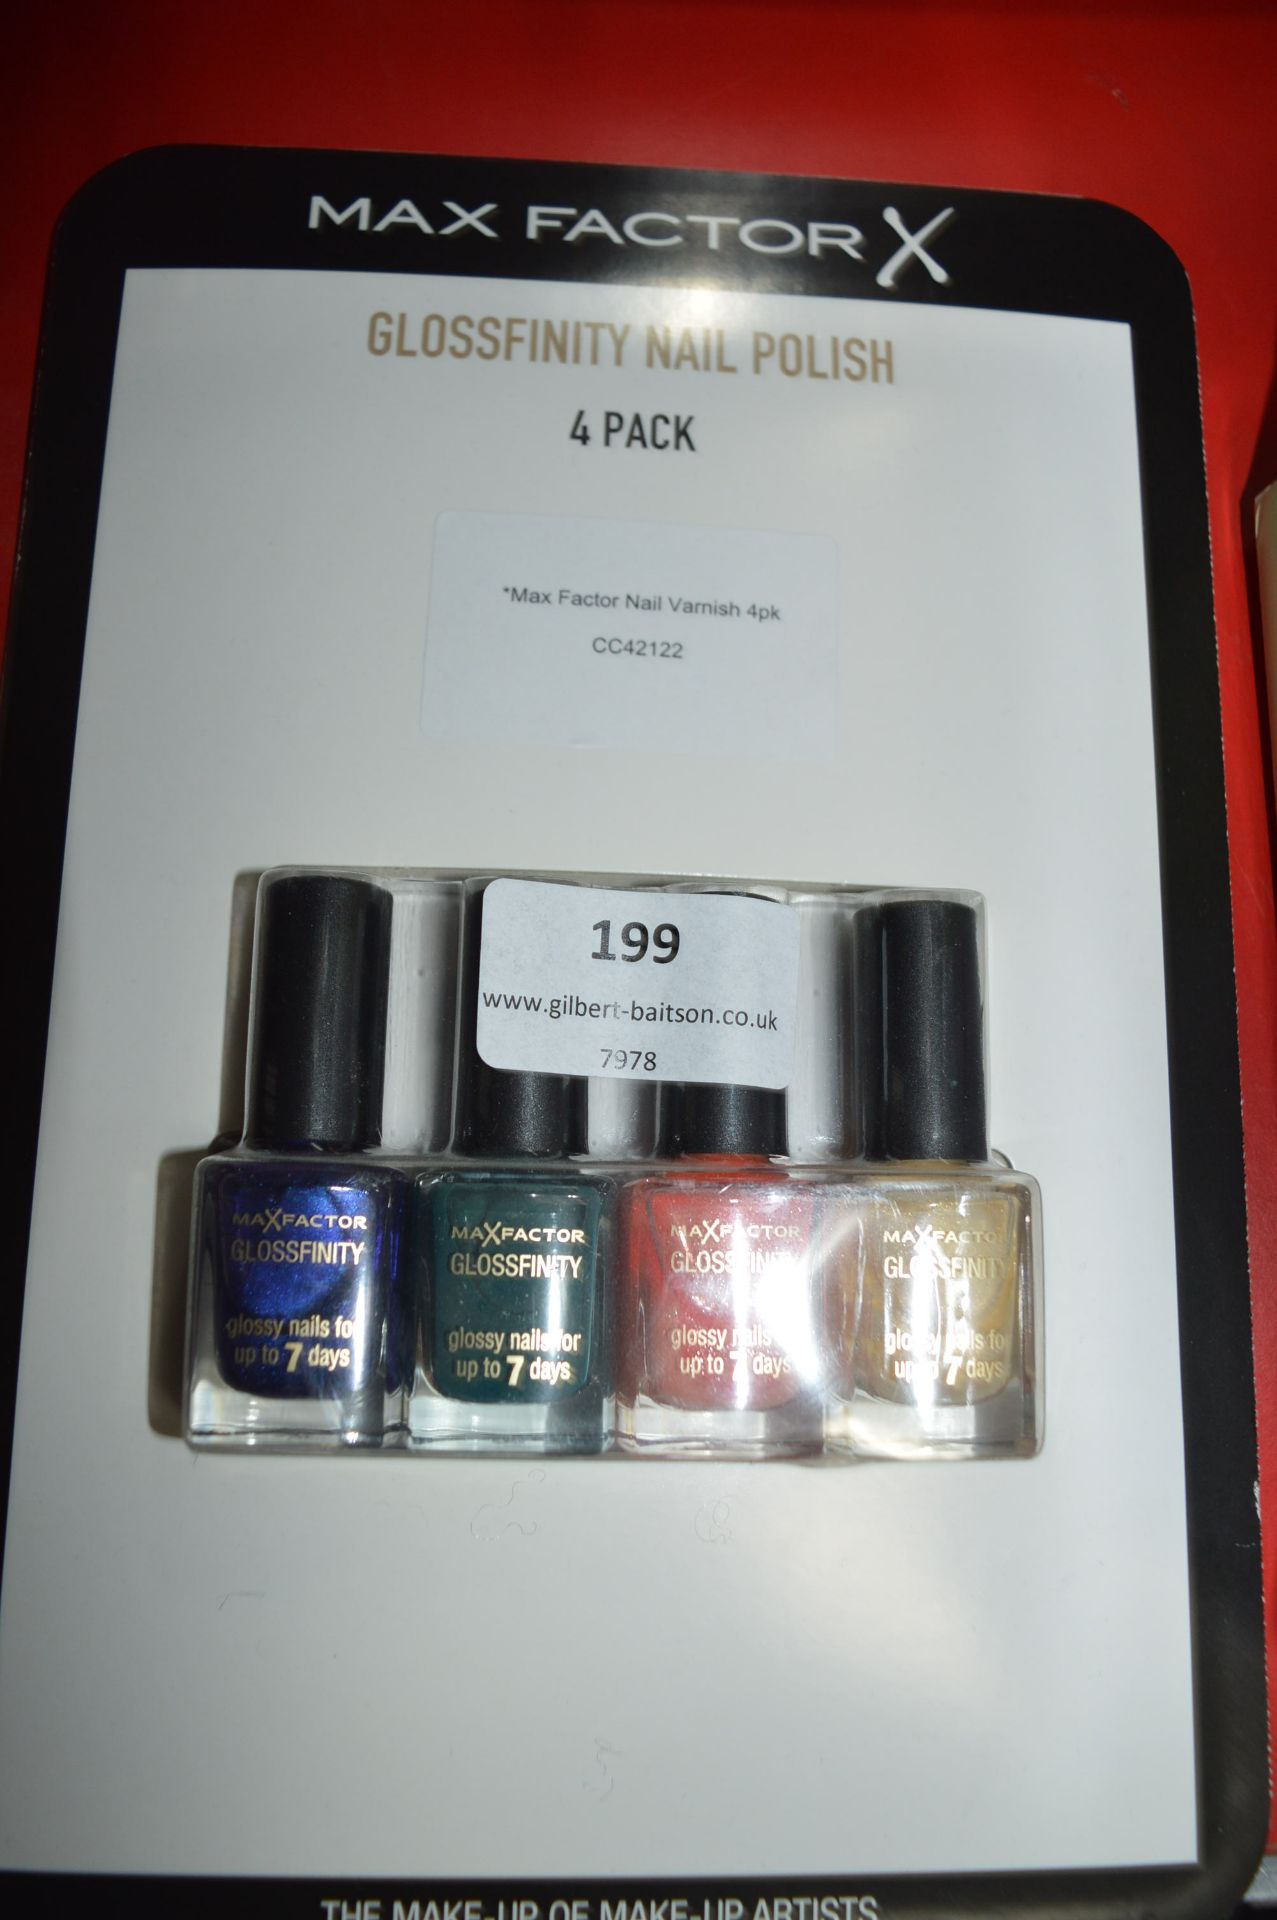 *Max Factor Glossfinity Nail Polish 4pk